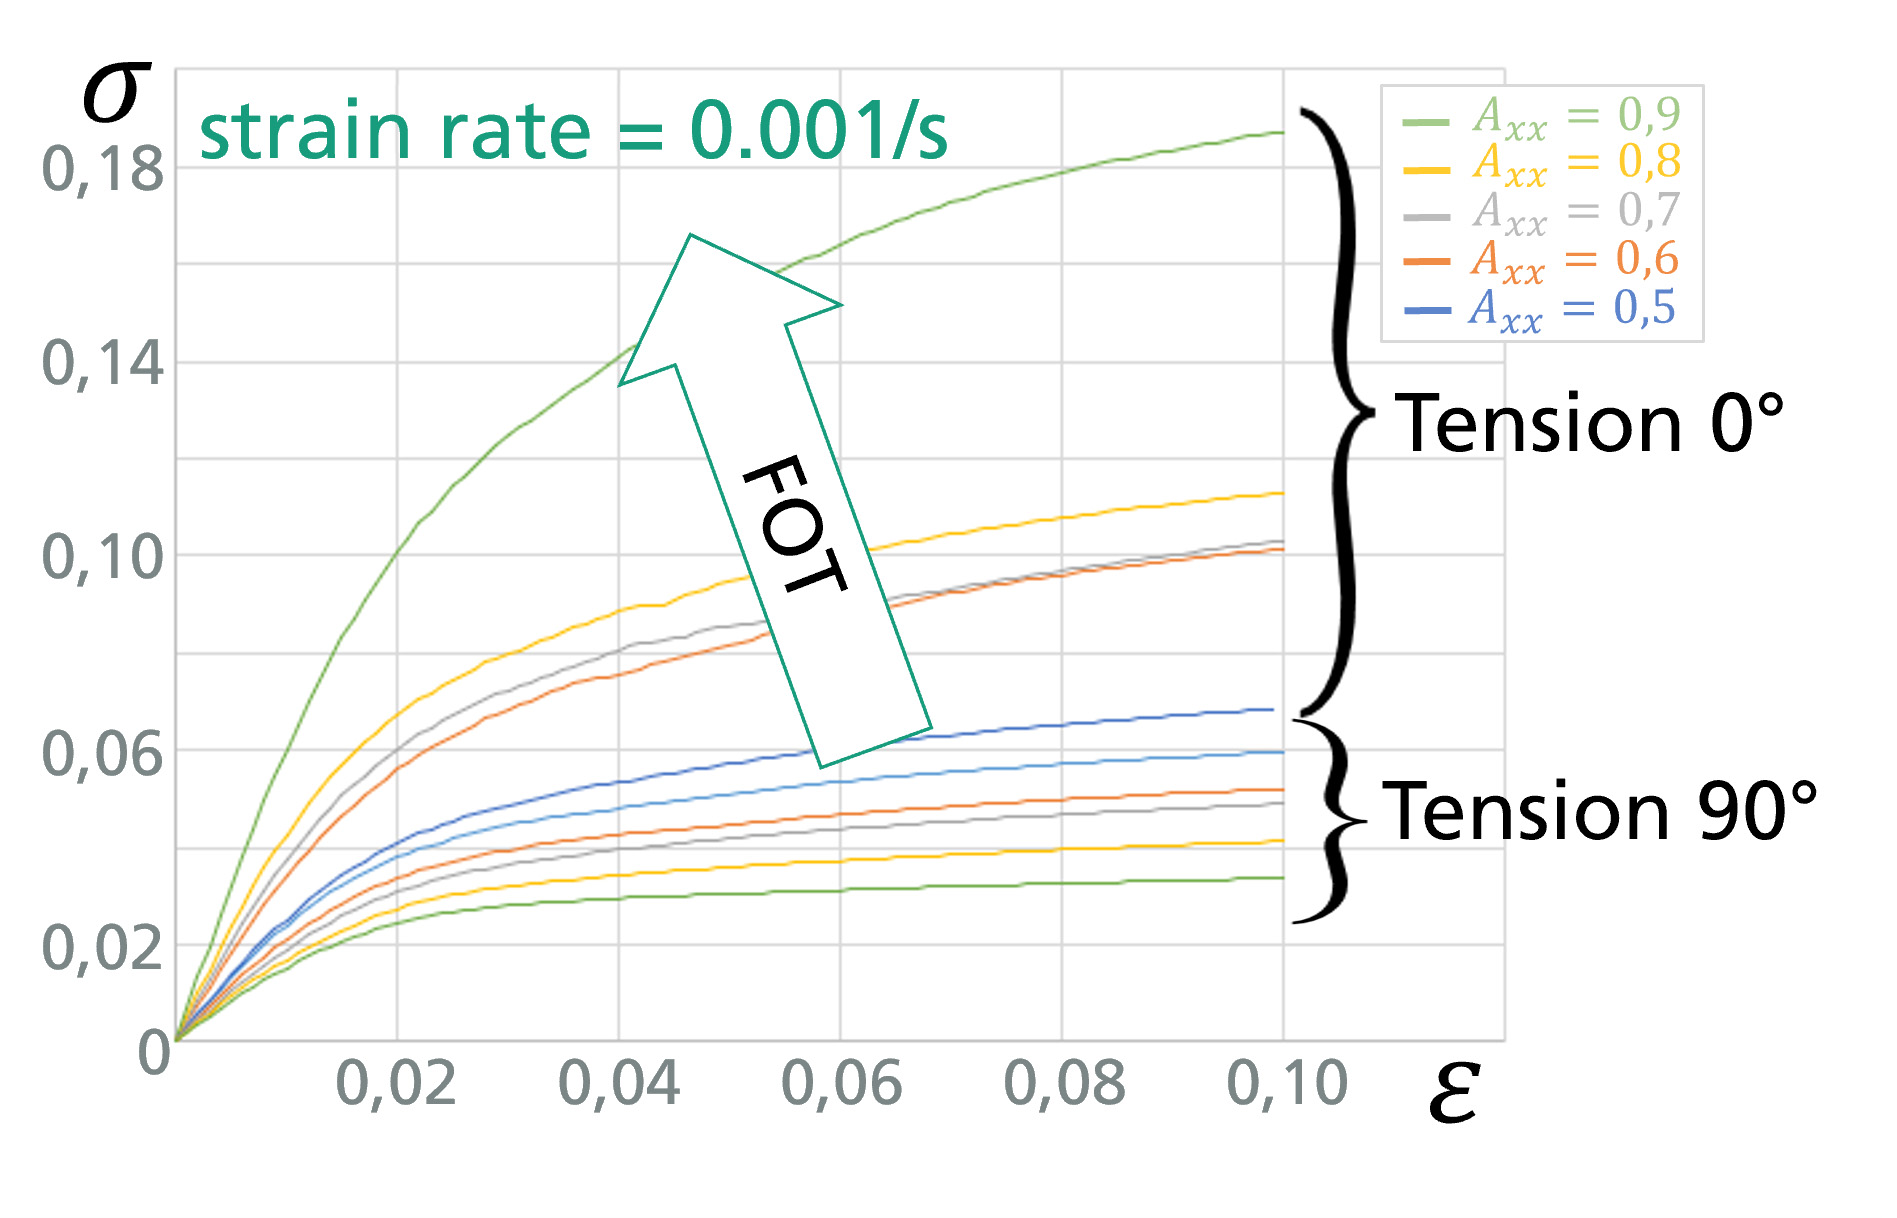 Spannungs-Dehnungs-Kurven von beispielhaften RVE-Simulationen (Representative Volume Elements) mit unterschiedlichen Faserorientierungen.